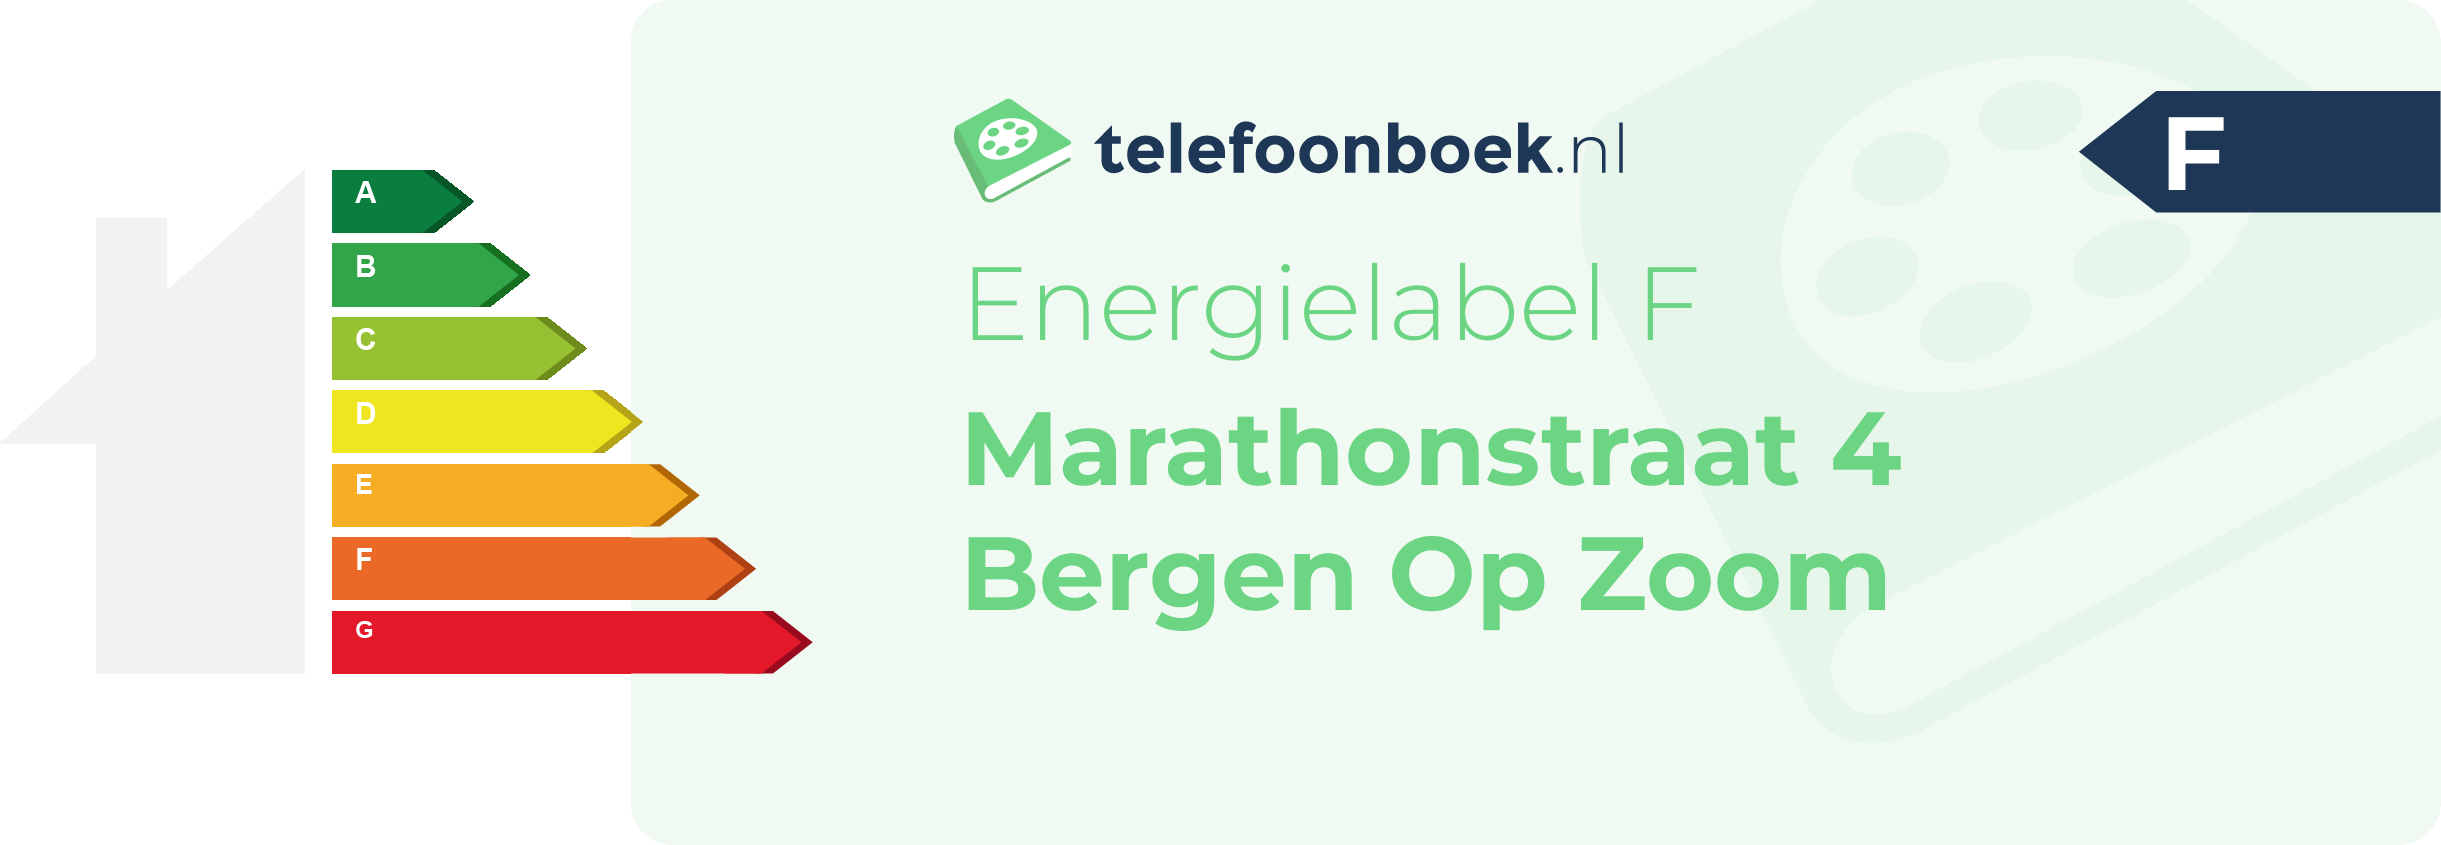 Energielabel Marathonstraat 4 Bergen Op Zoom